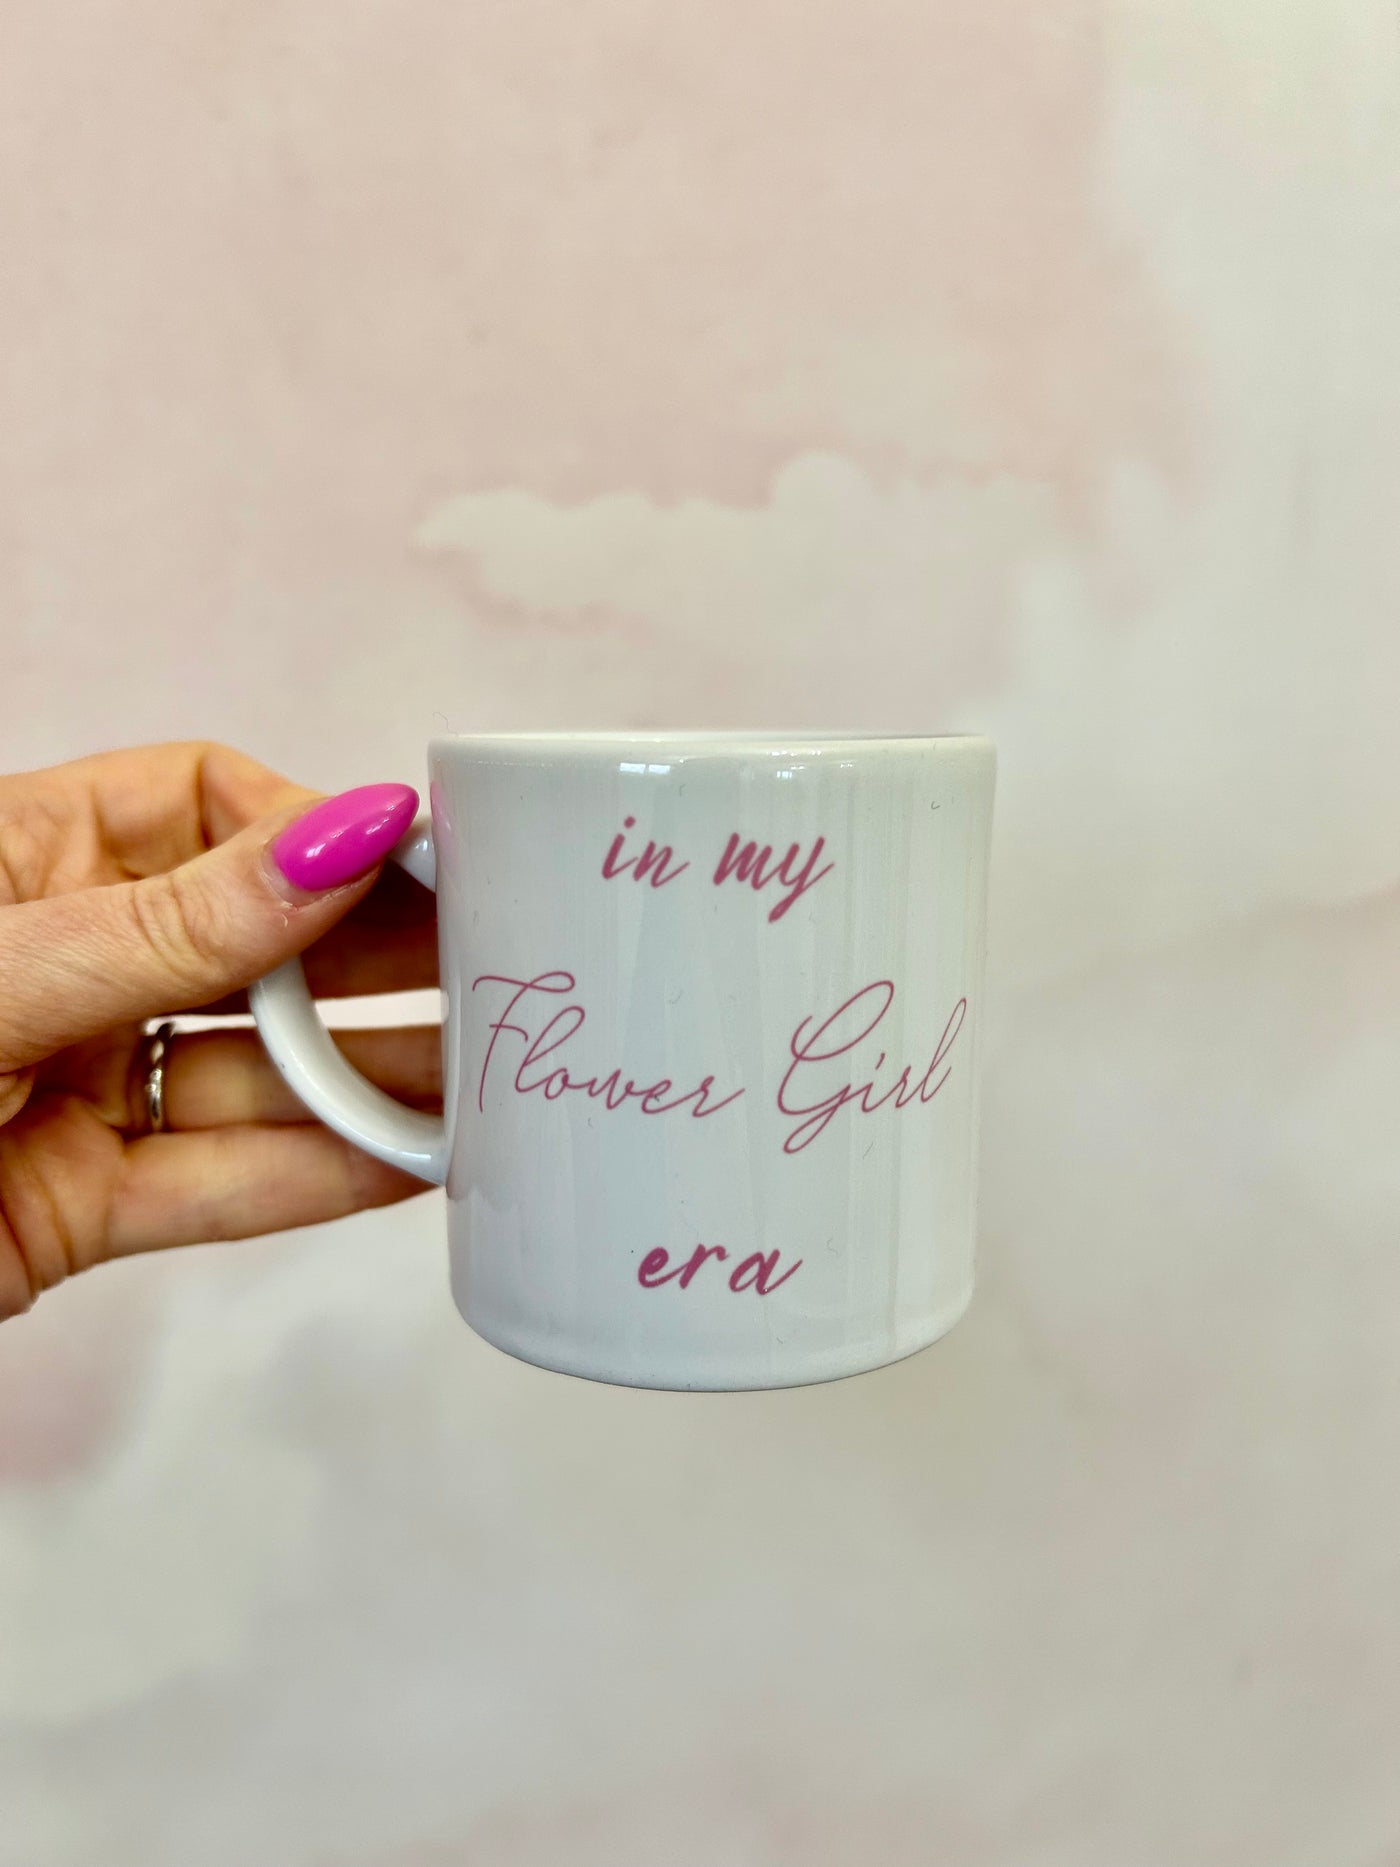 In my Flower Girl era pink mug